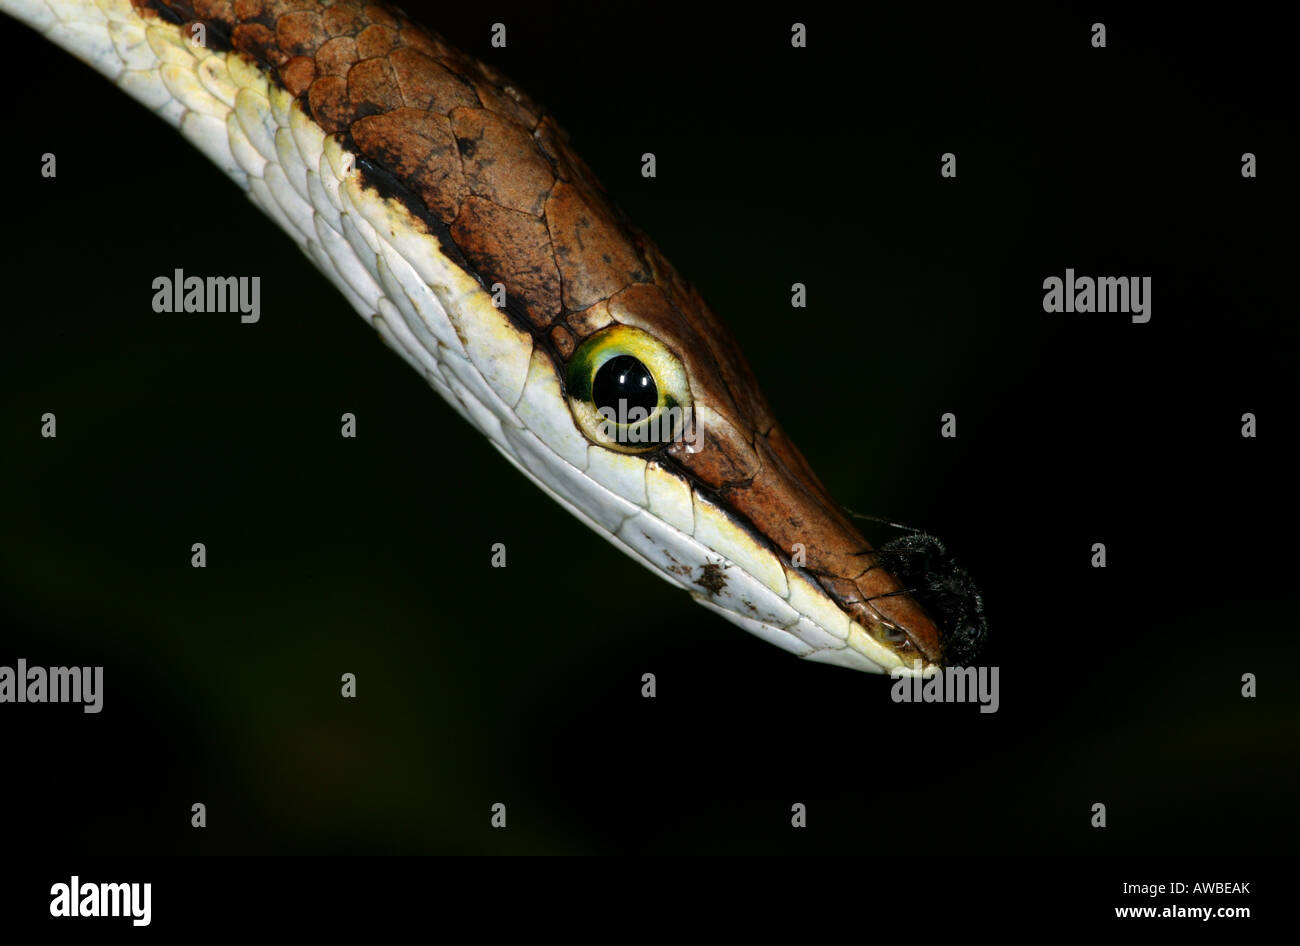 Closeup portrait of a Brown Vine-snake, Oxybelis aeneus, dans la réserve naturelle métropolitaine, République du Panama. Banque D'Images